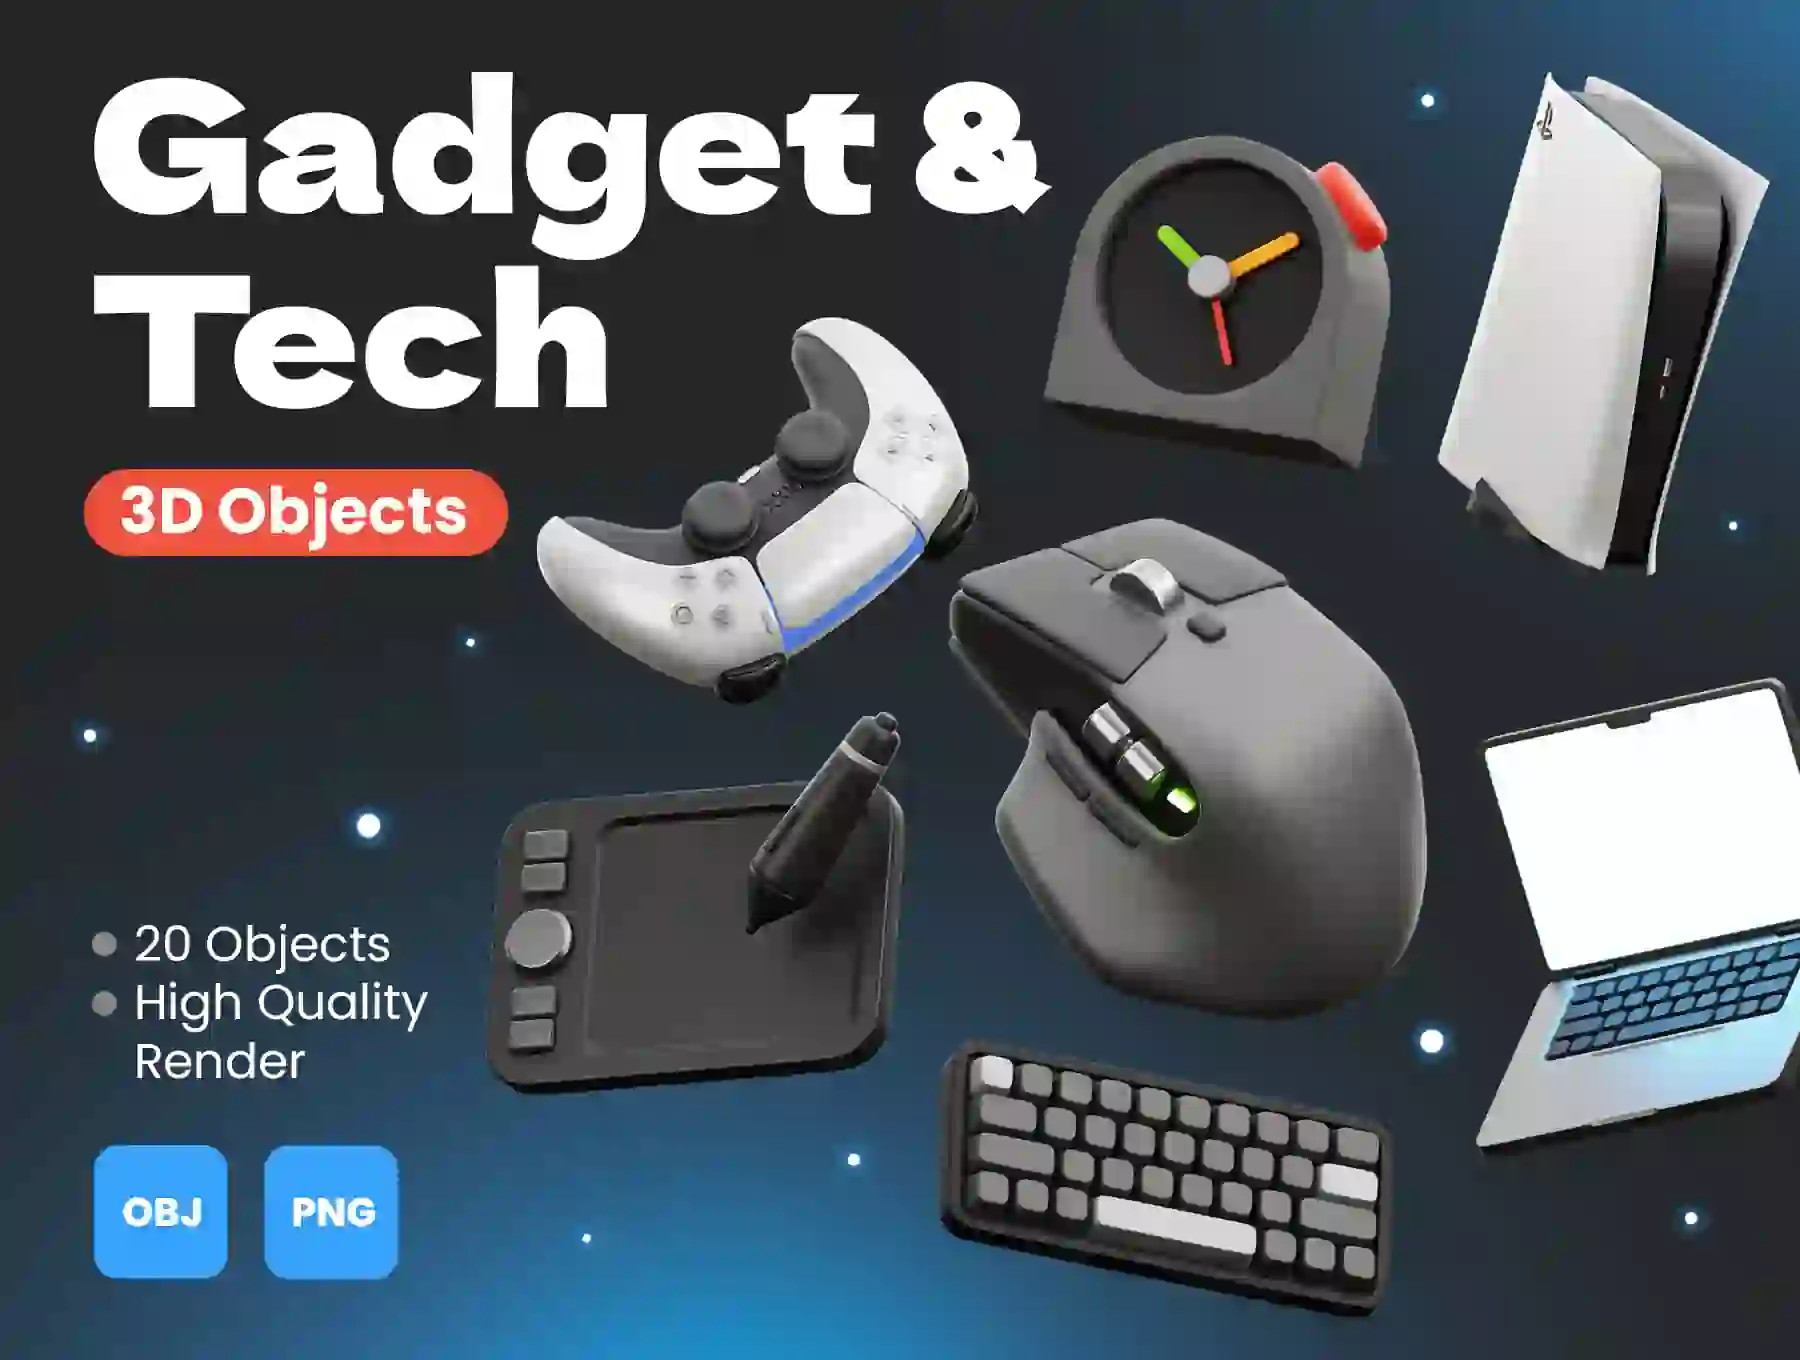 3D Gadget and Tech